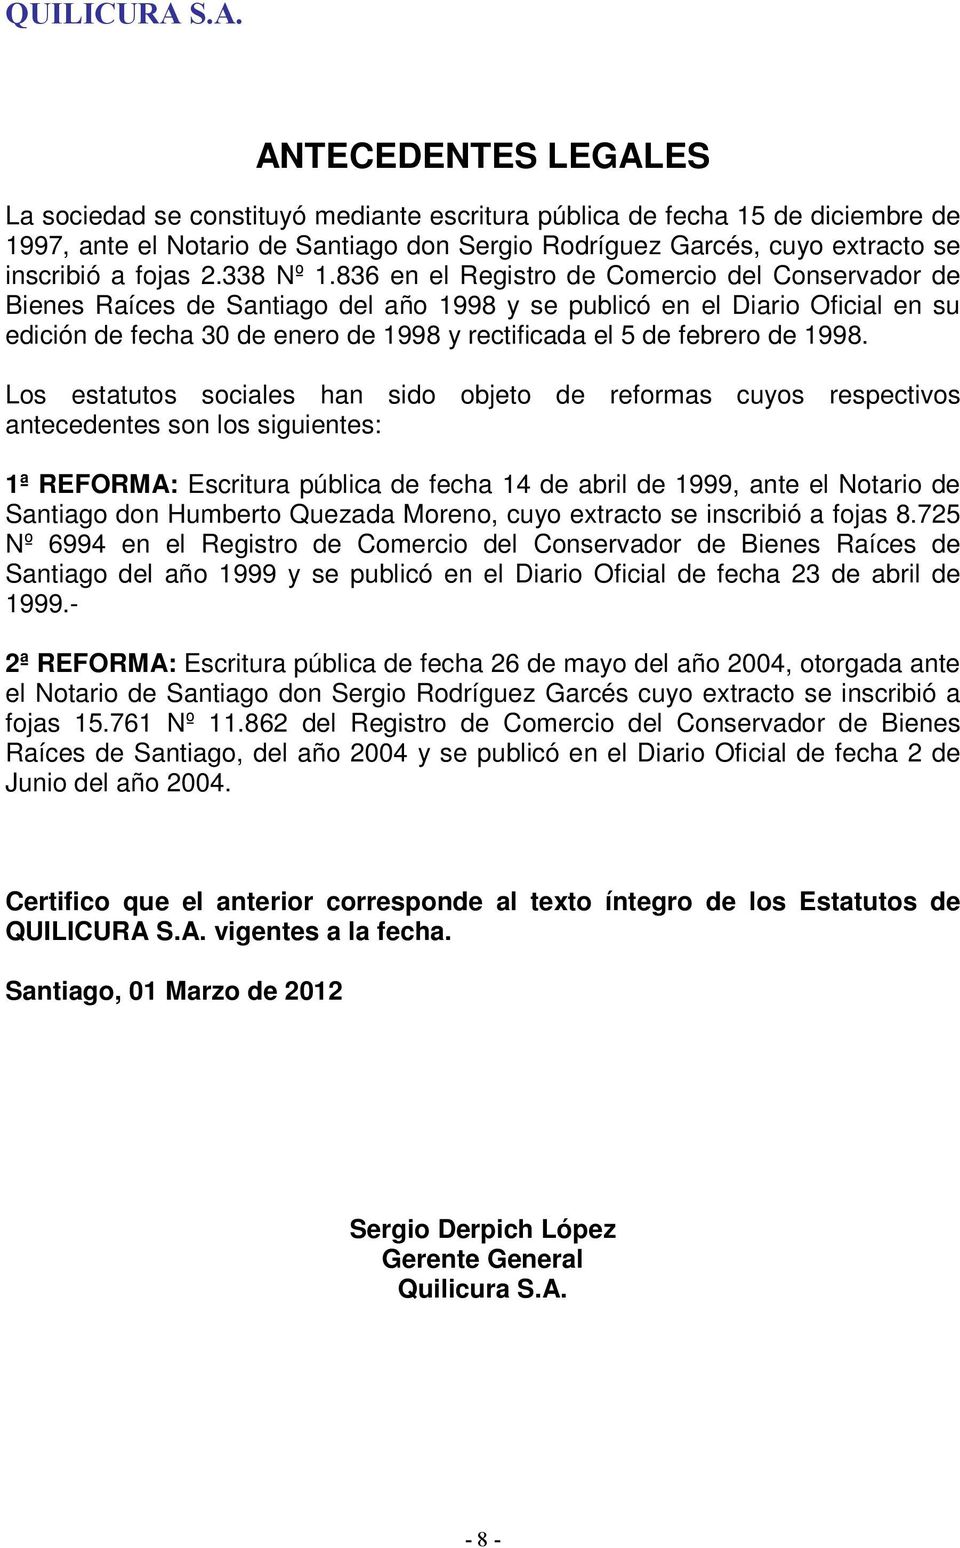 836 en el Registro de Comercio del Conservador de Bienes Raíces de Santiago del año 1998 y se publicó en el Diario Oficial en su edición de fecha 30 de enero de 1998 y rectificada el 5 de febrero de